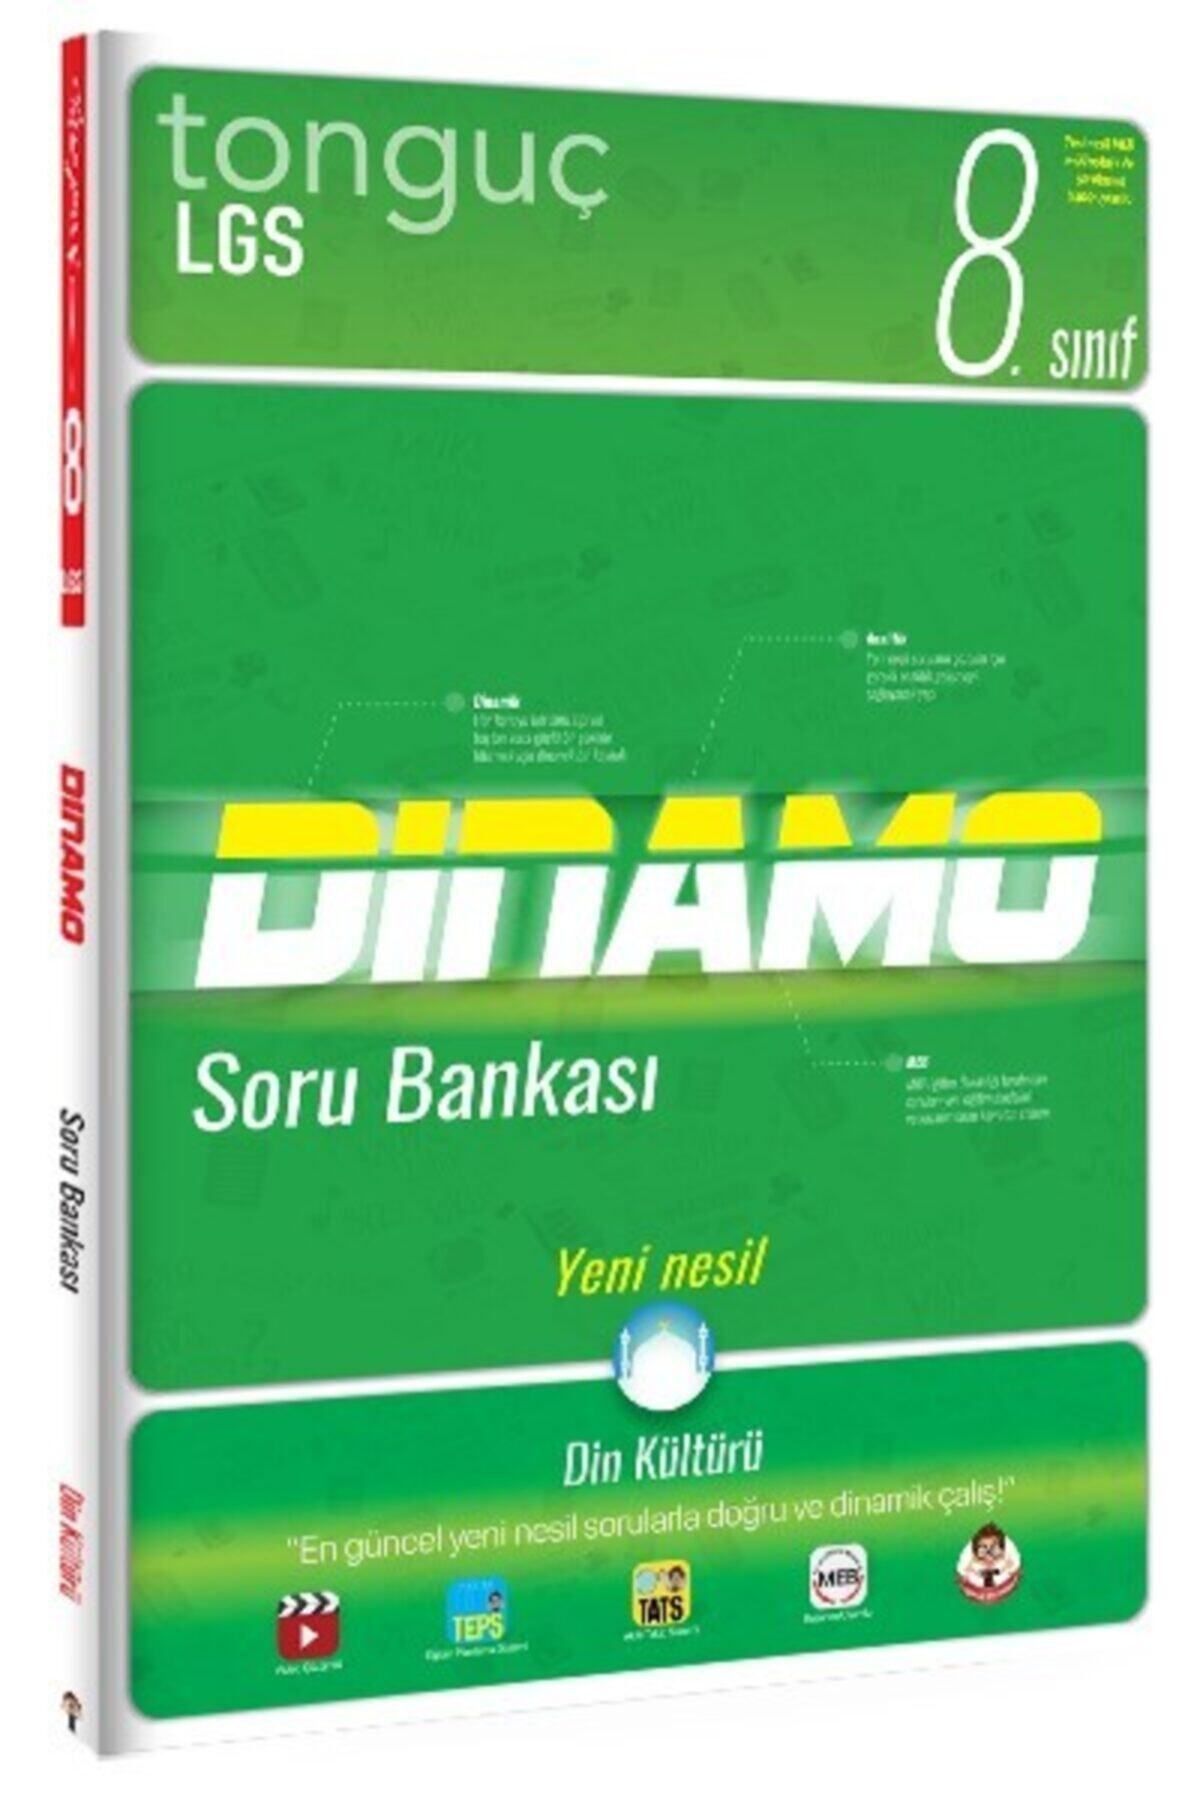 Tonguç Yayınları 8. Sınıf Lgs Din Kültürü Dinamo Soru Bankası